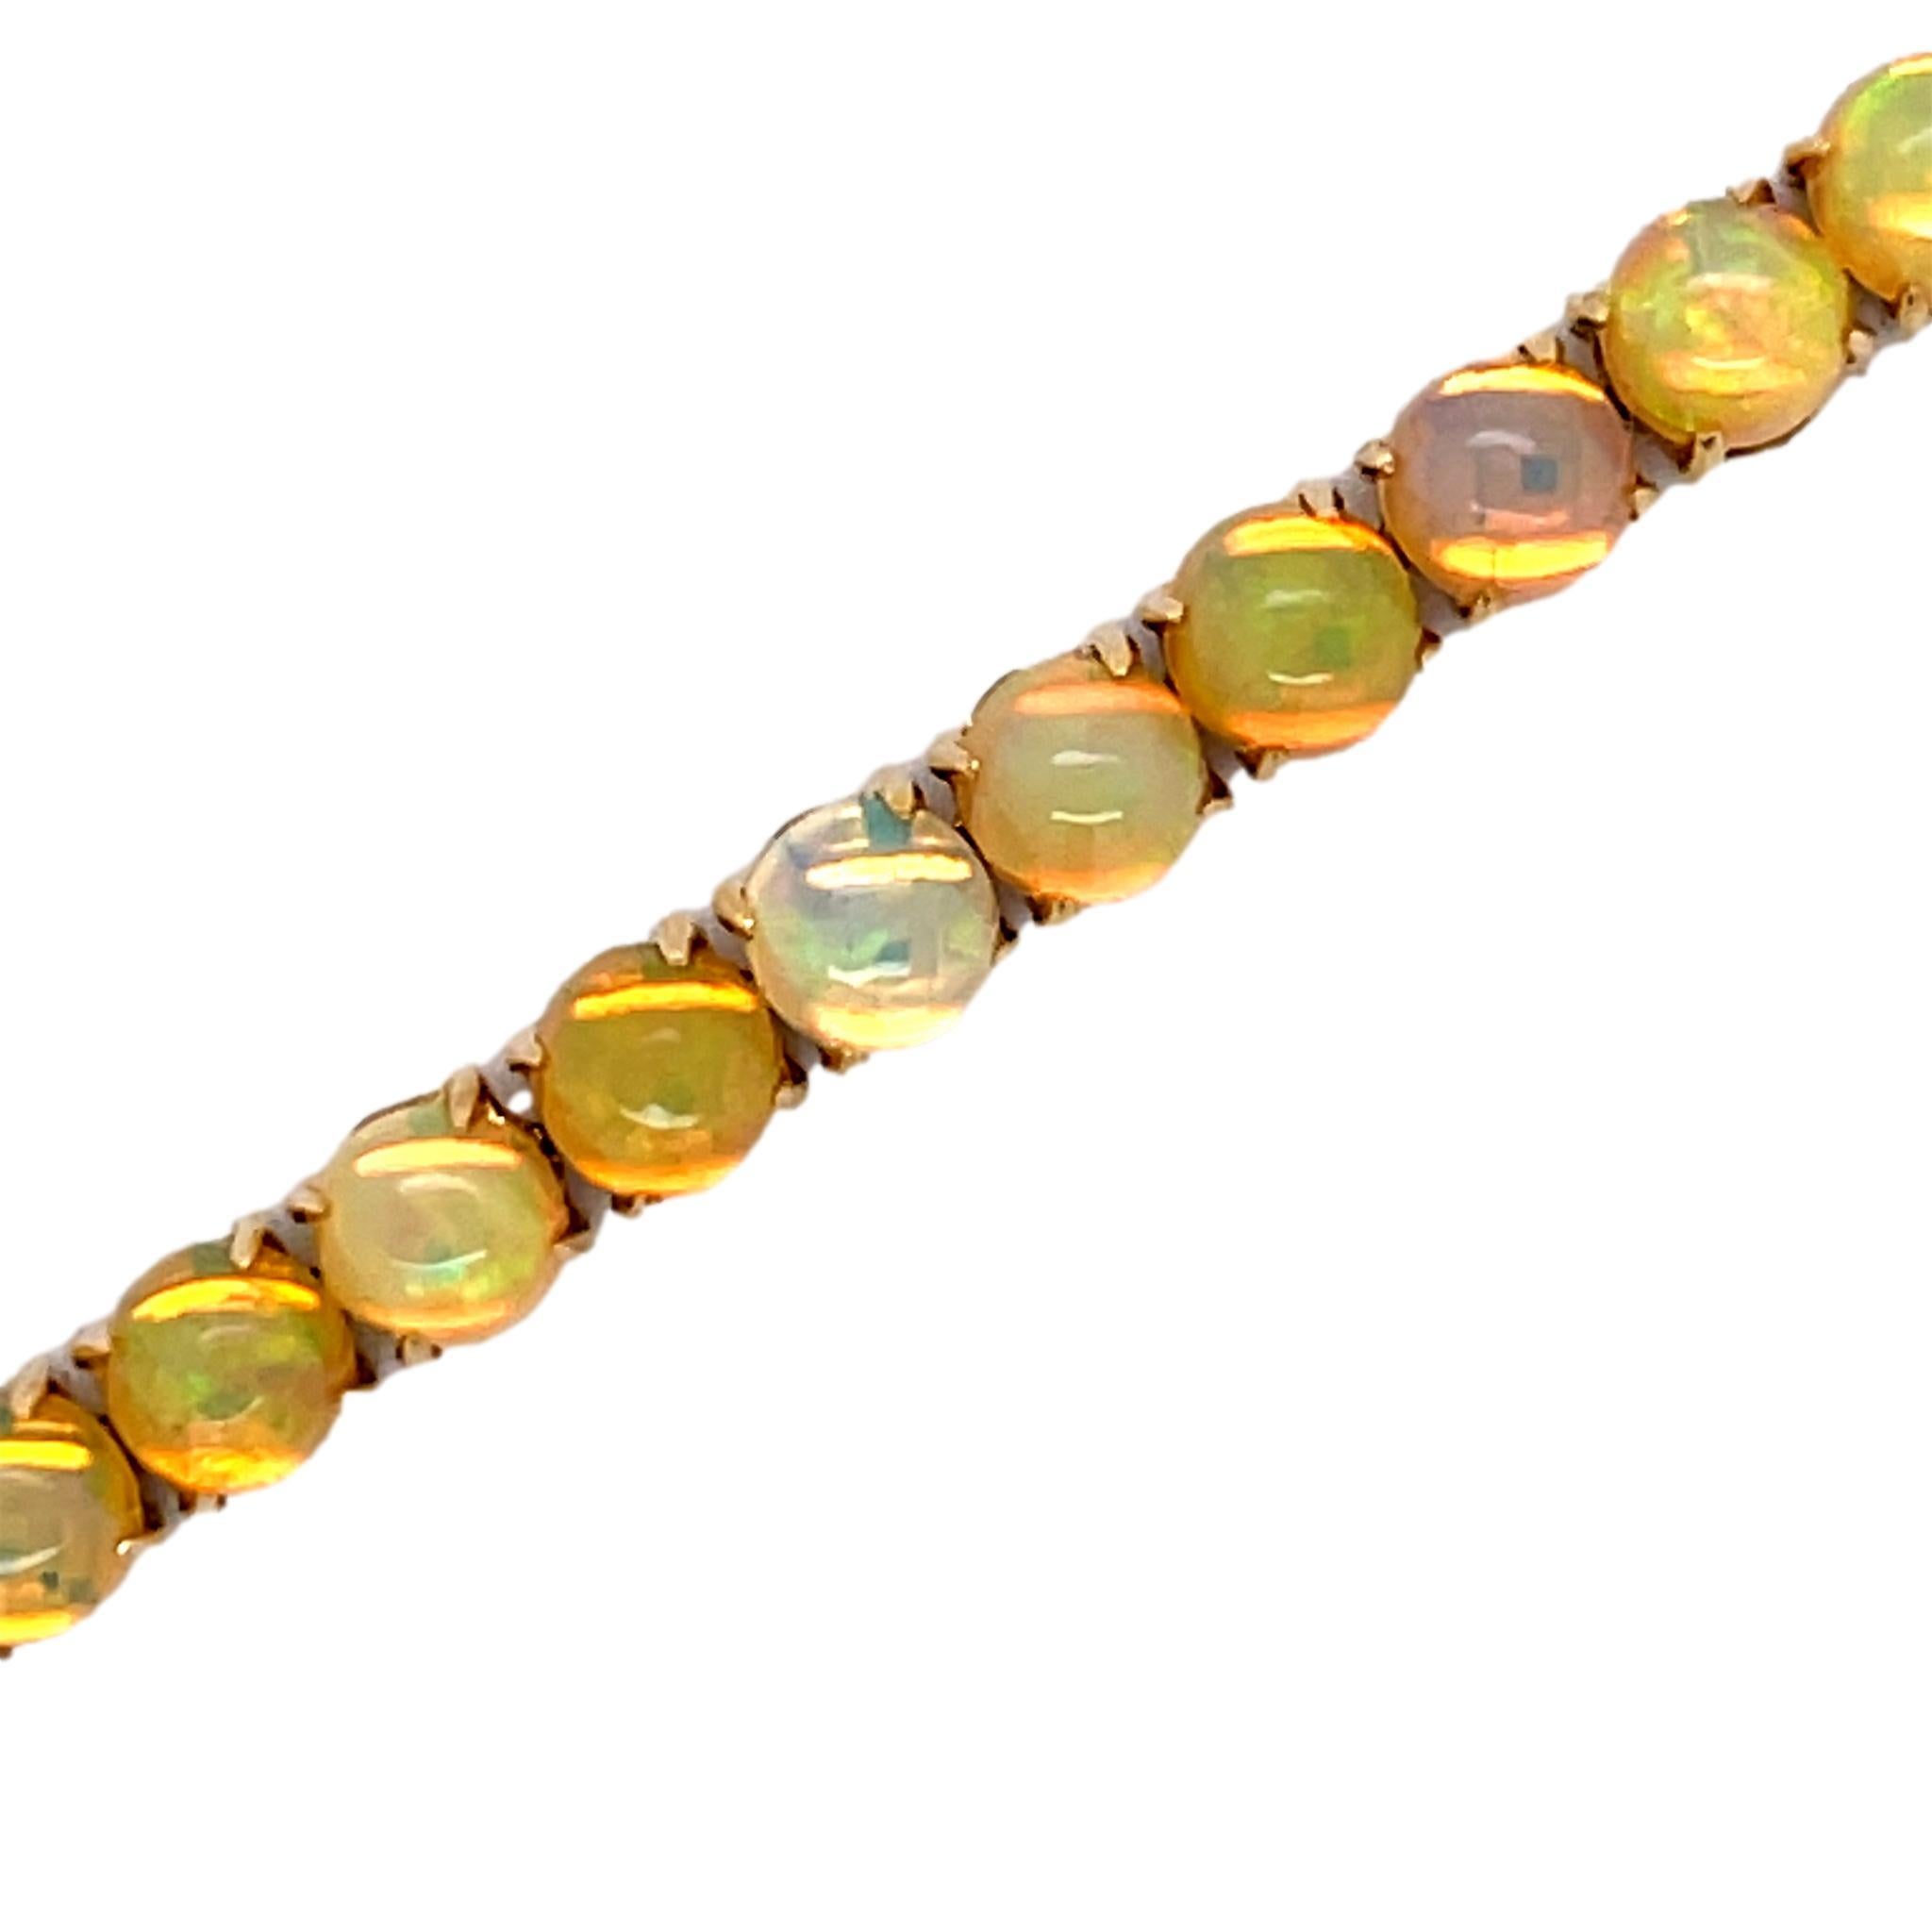 Dieses atemberaubende Armband besteht aus 35 leuchtenden äthiopischen Opalen, die jeweils mit 4 Zacken besetzt sind.  Es macht Spaß, sie im Alltag oder zu einem besonderen Anlass zu tragen. Ein Doppelschloss sorgt für zusätzliche Sicherheit. Dieses